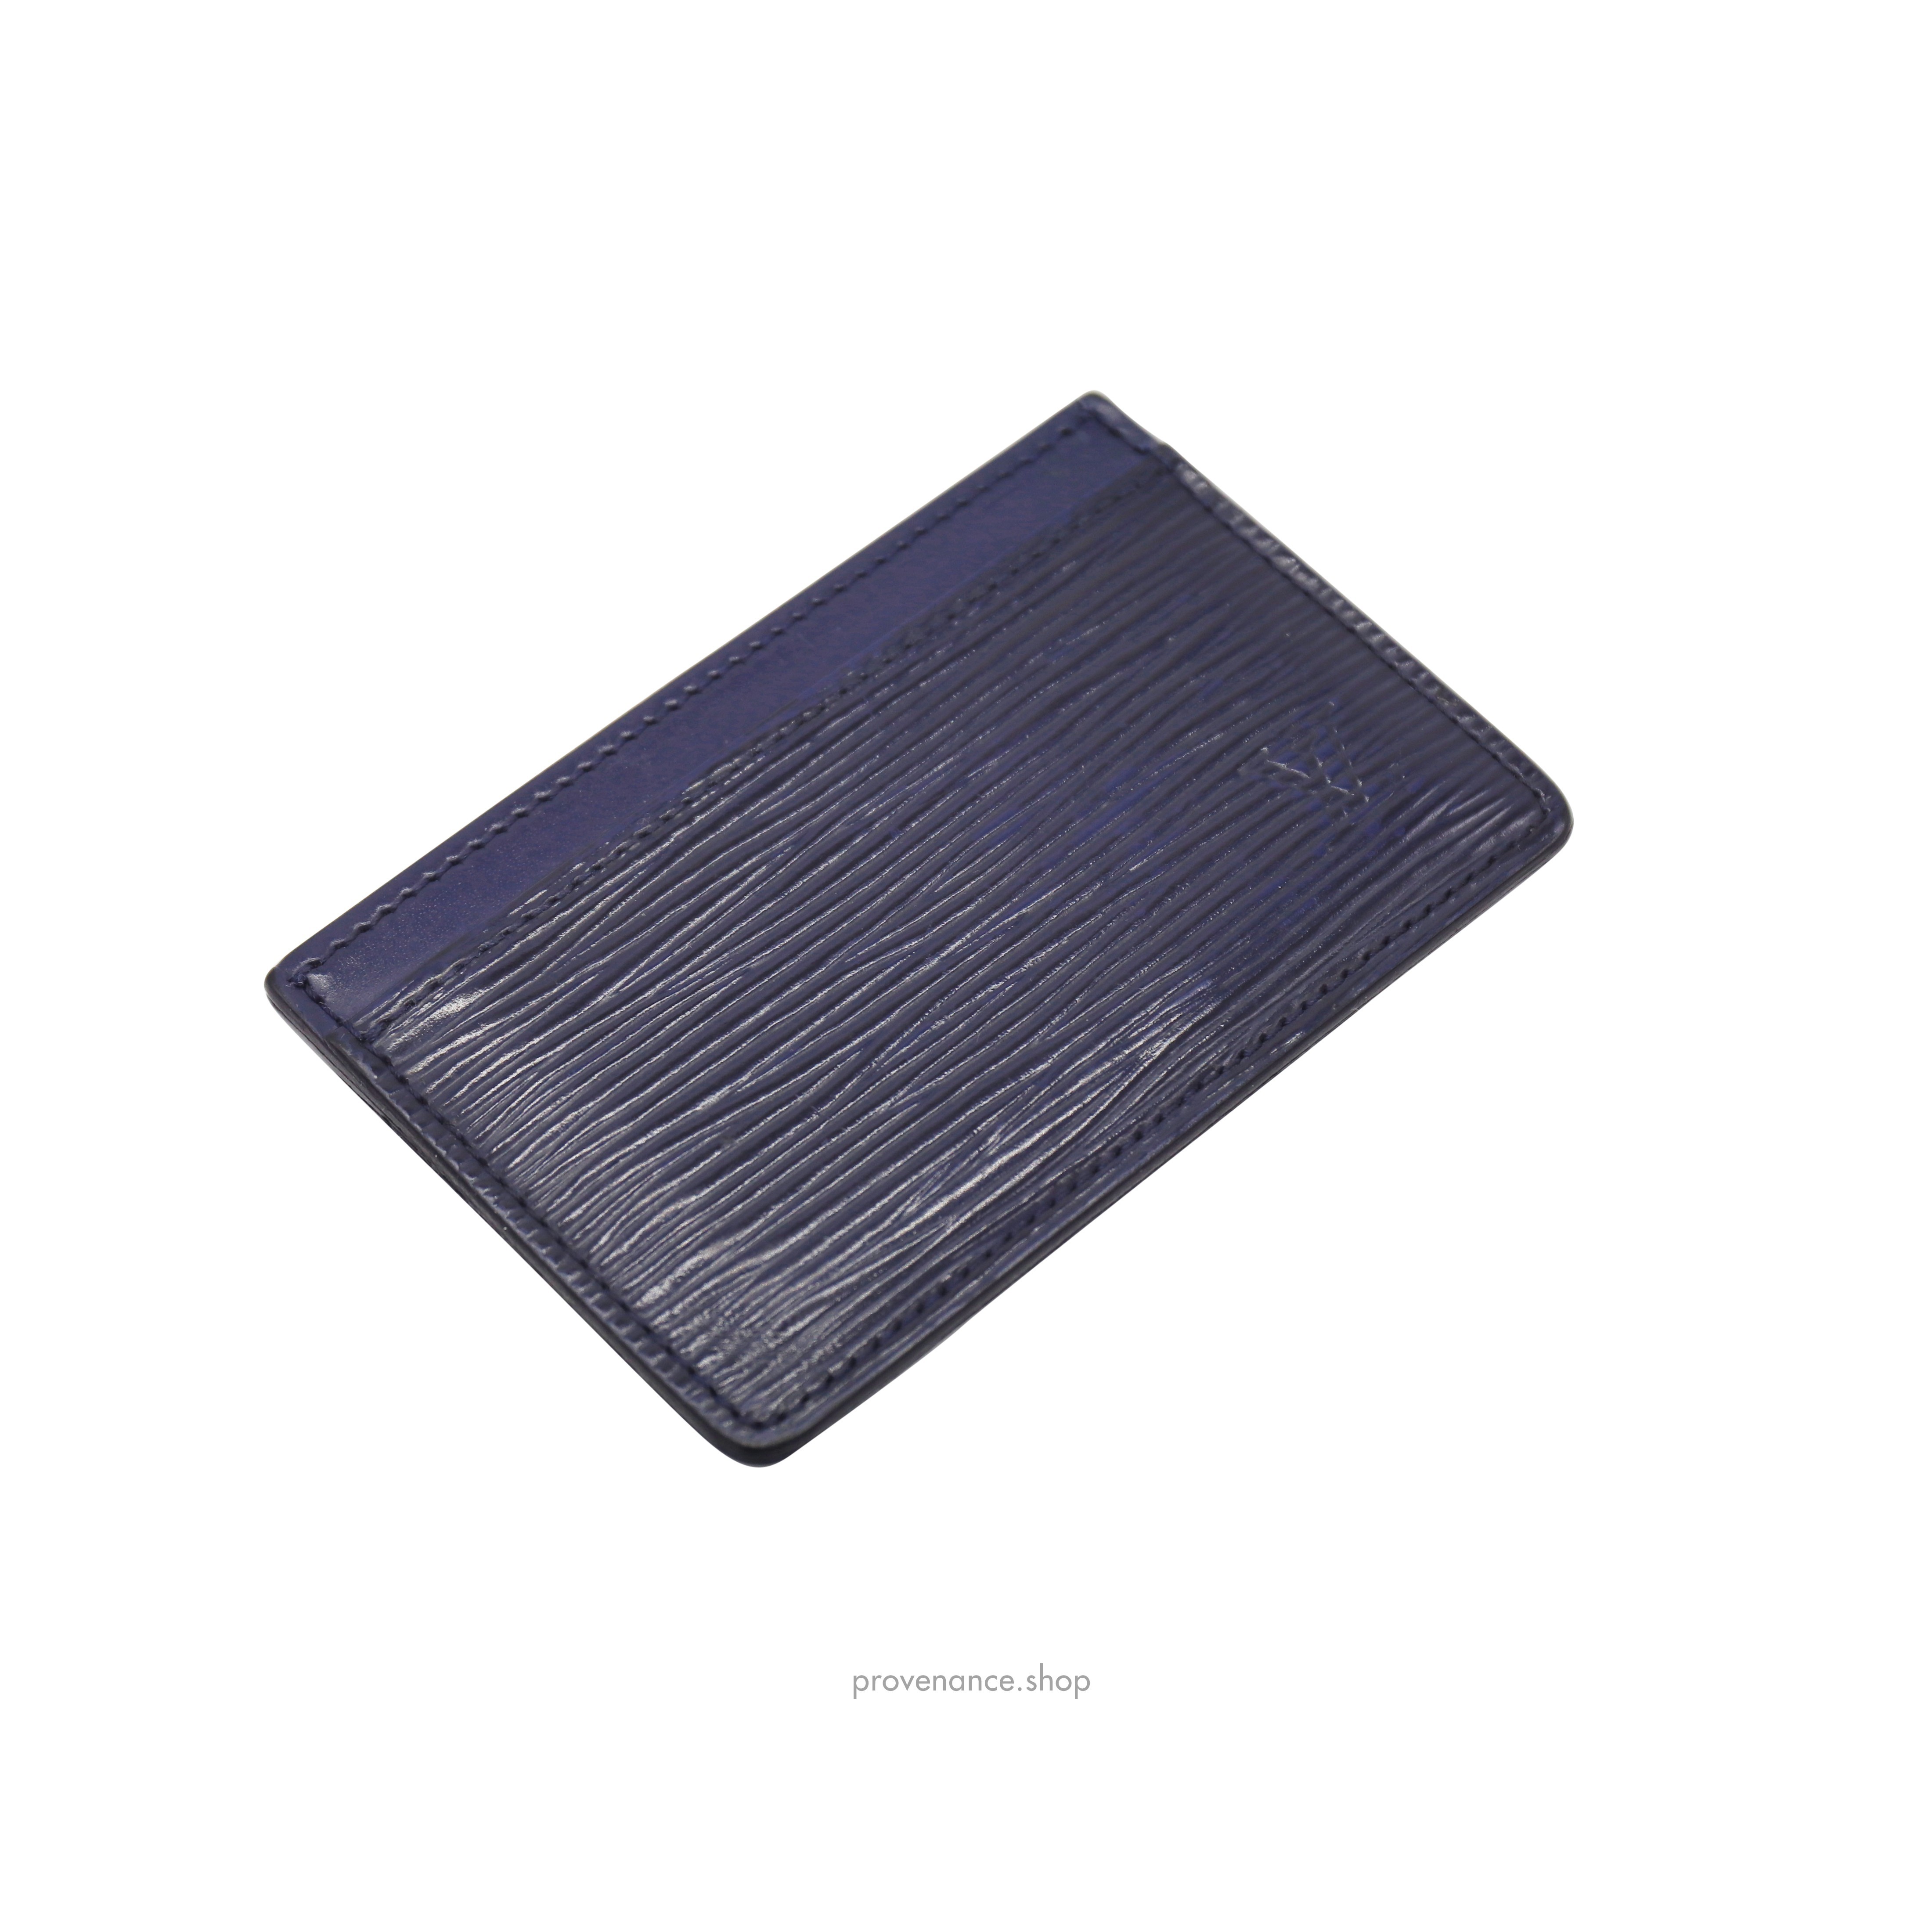 Card Holder Wallet - Navy Blue Epi Leather - 5